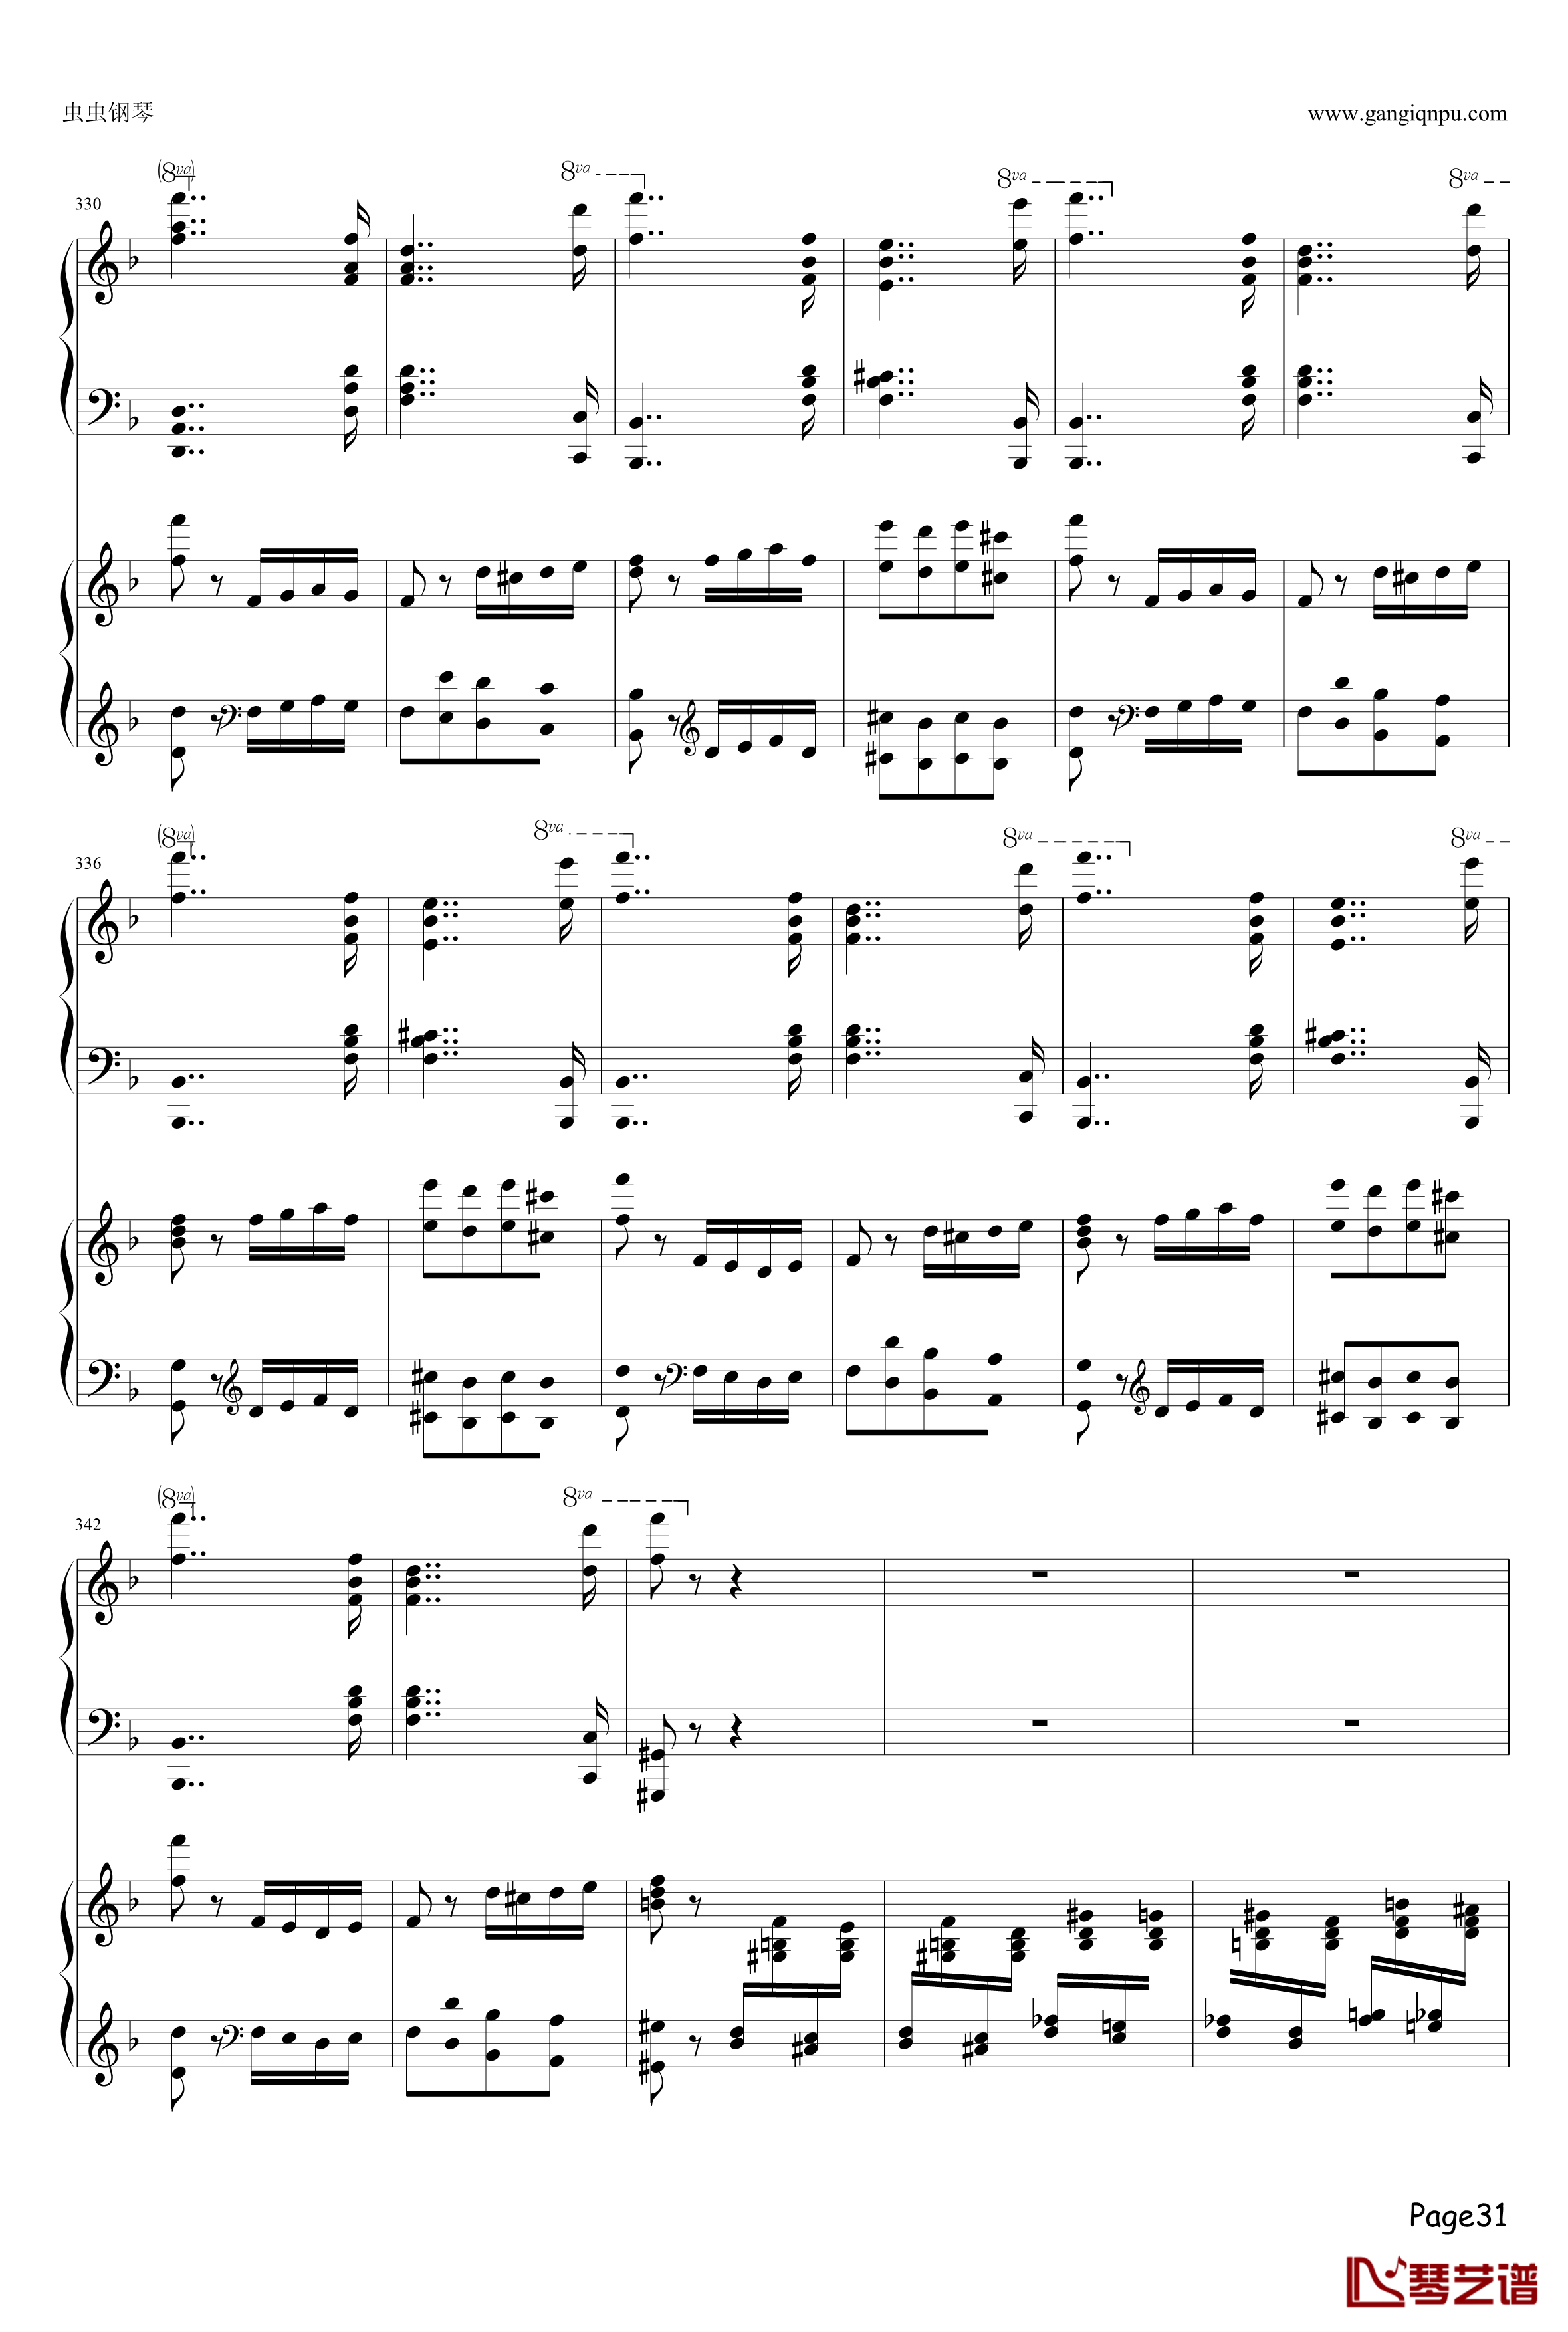 幻之舞钢琴谱-李斯特31